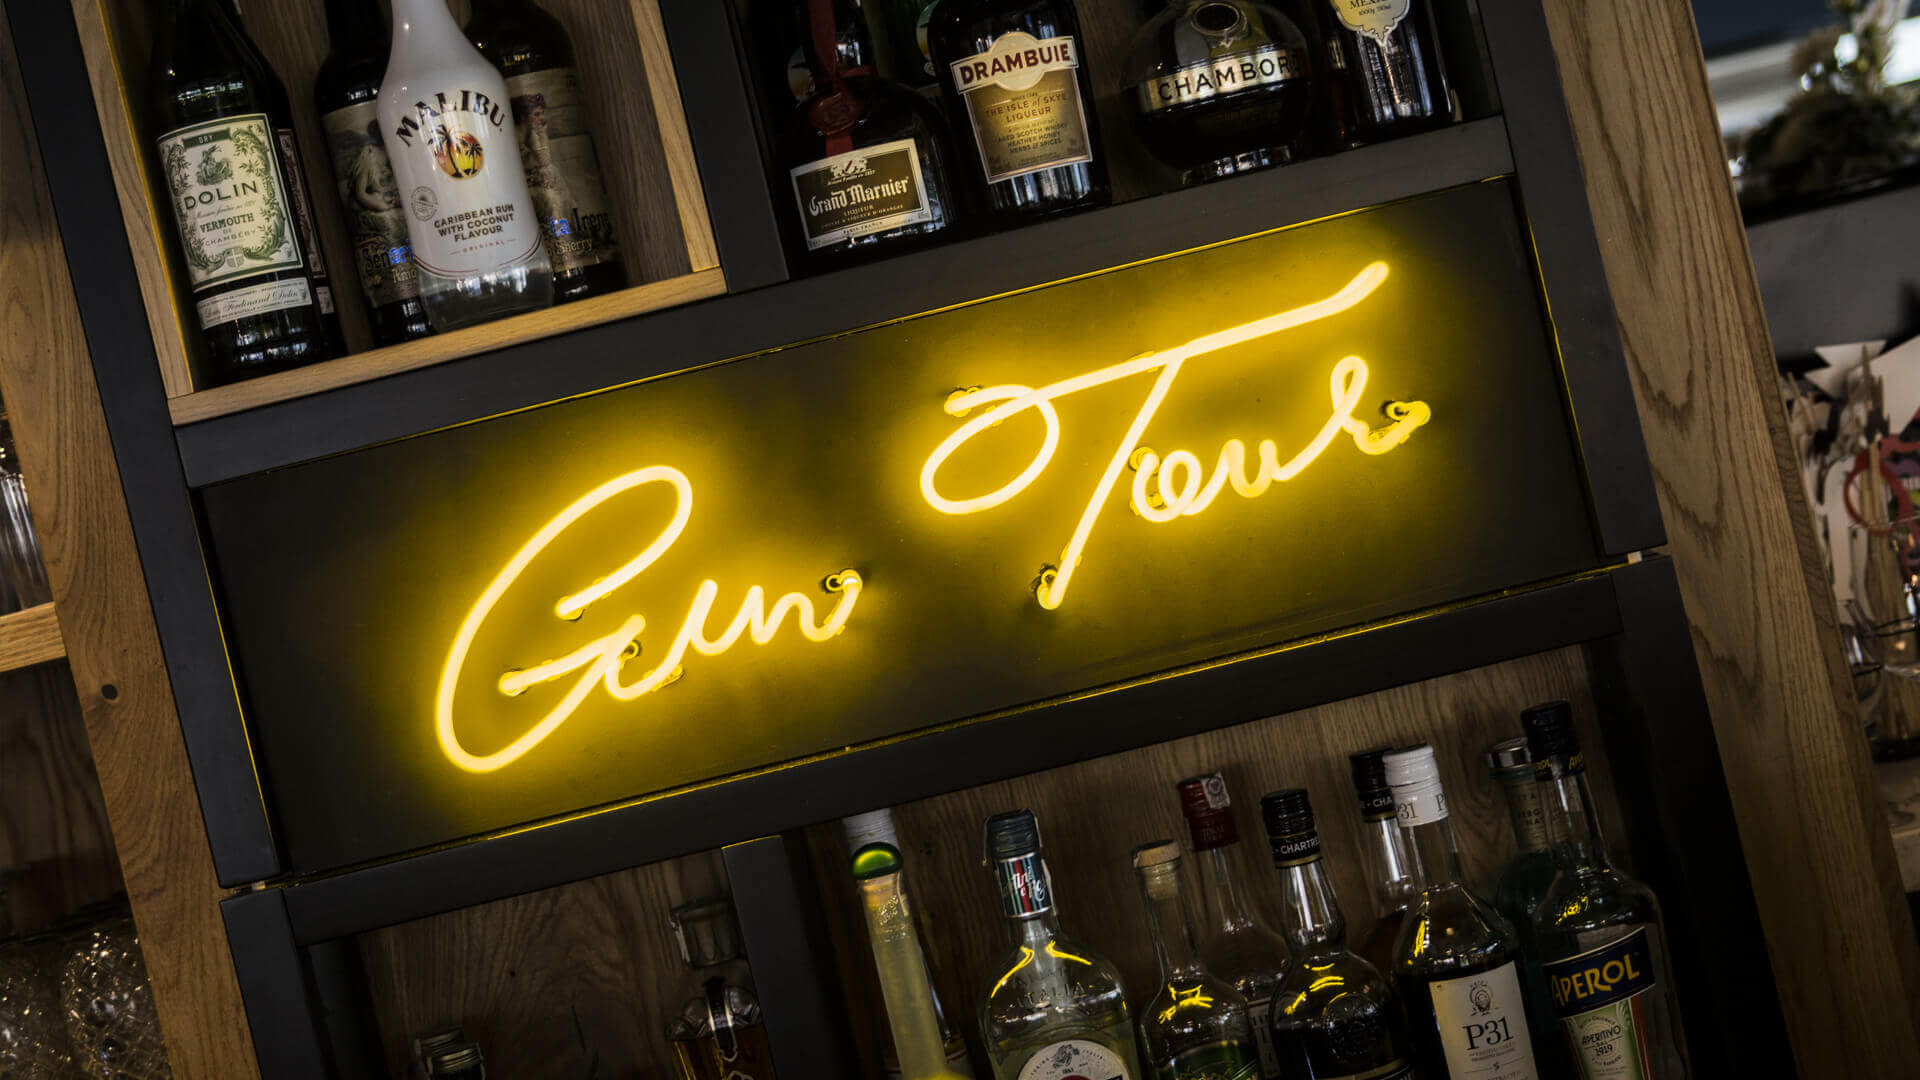 Gintur Gin tour - Gin-tour-neon-dietro-il-bar-in-ristorante-neon-sul-muro-sotto-illuminato-sul-vetro-bianco-neon-azienda-logo-neon-sul-polacco-tra-bottiglie-szafarnia10-gdansk (21) 